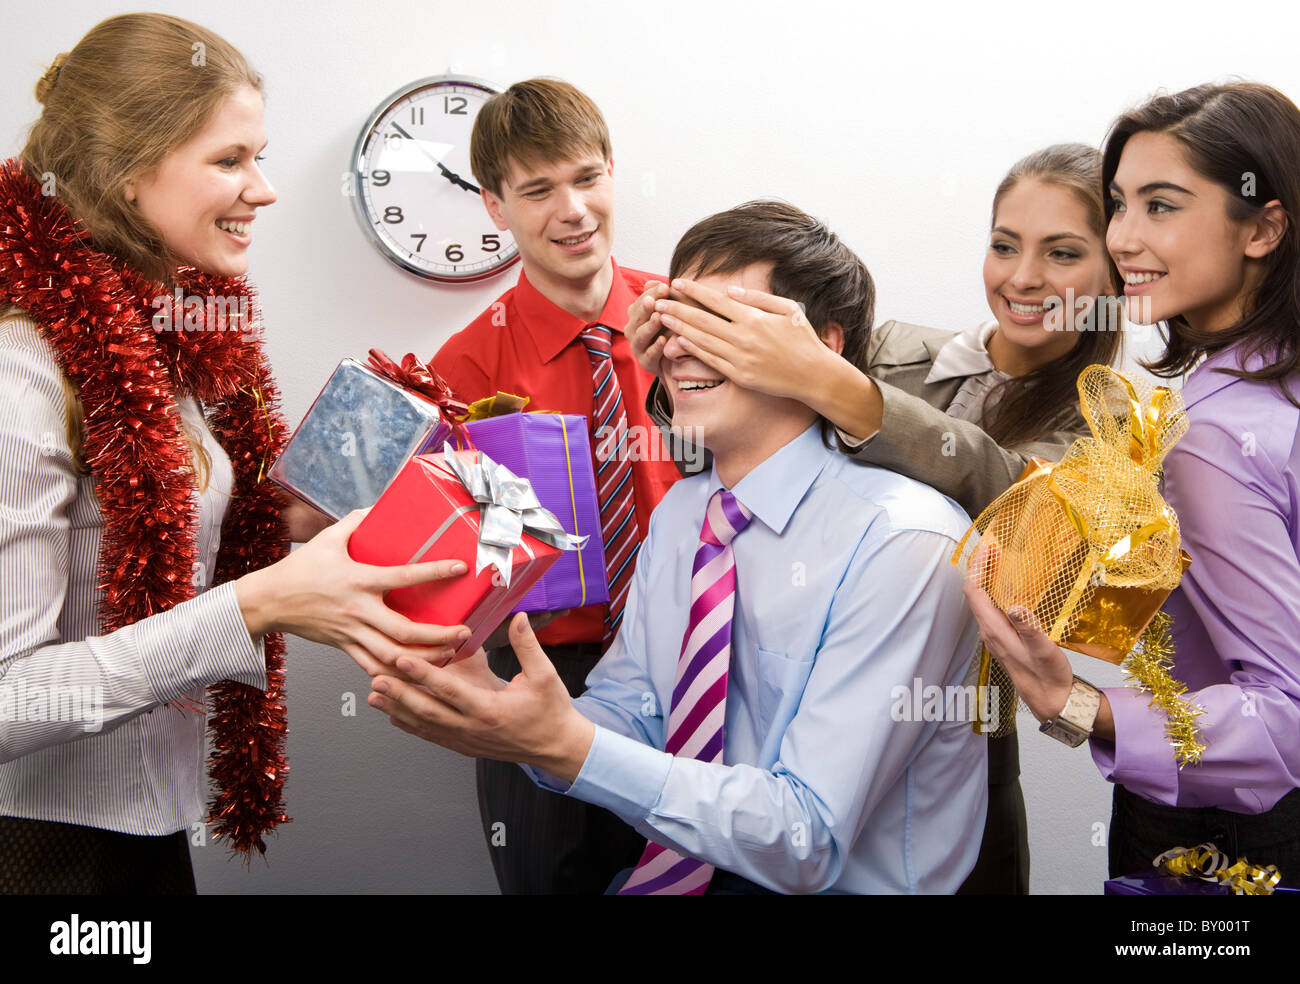 Foto von fröhlichen Geschäftsfrau, halten sie die Hände auf den Augen des Mannes während ihrer Kollegen bereitet Geschenke für ihn Stockfoto